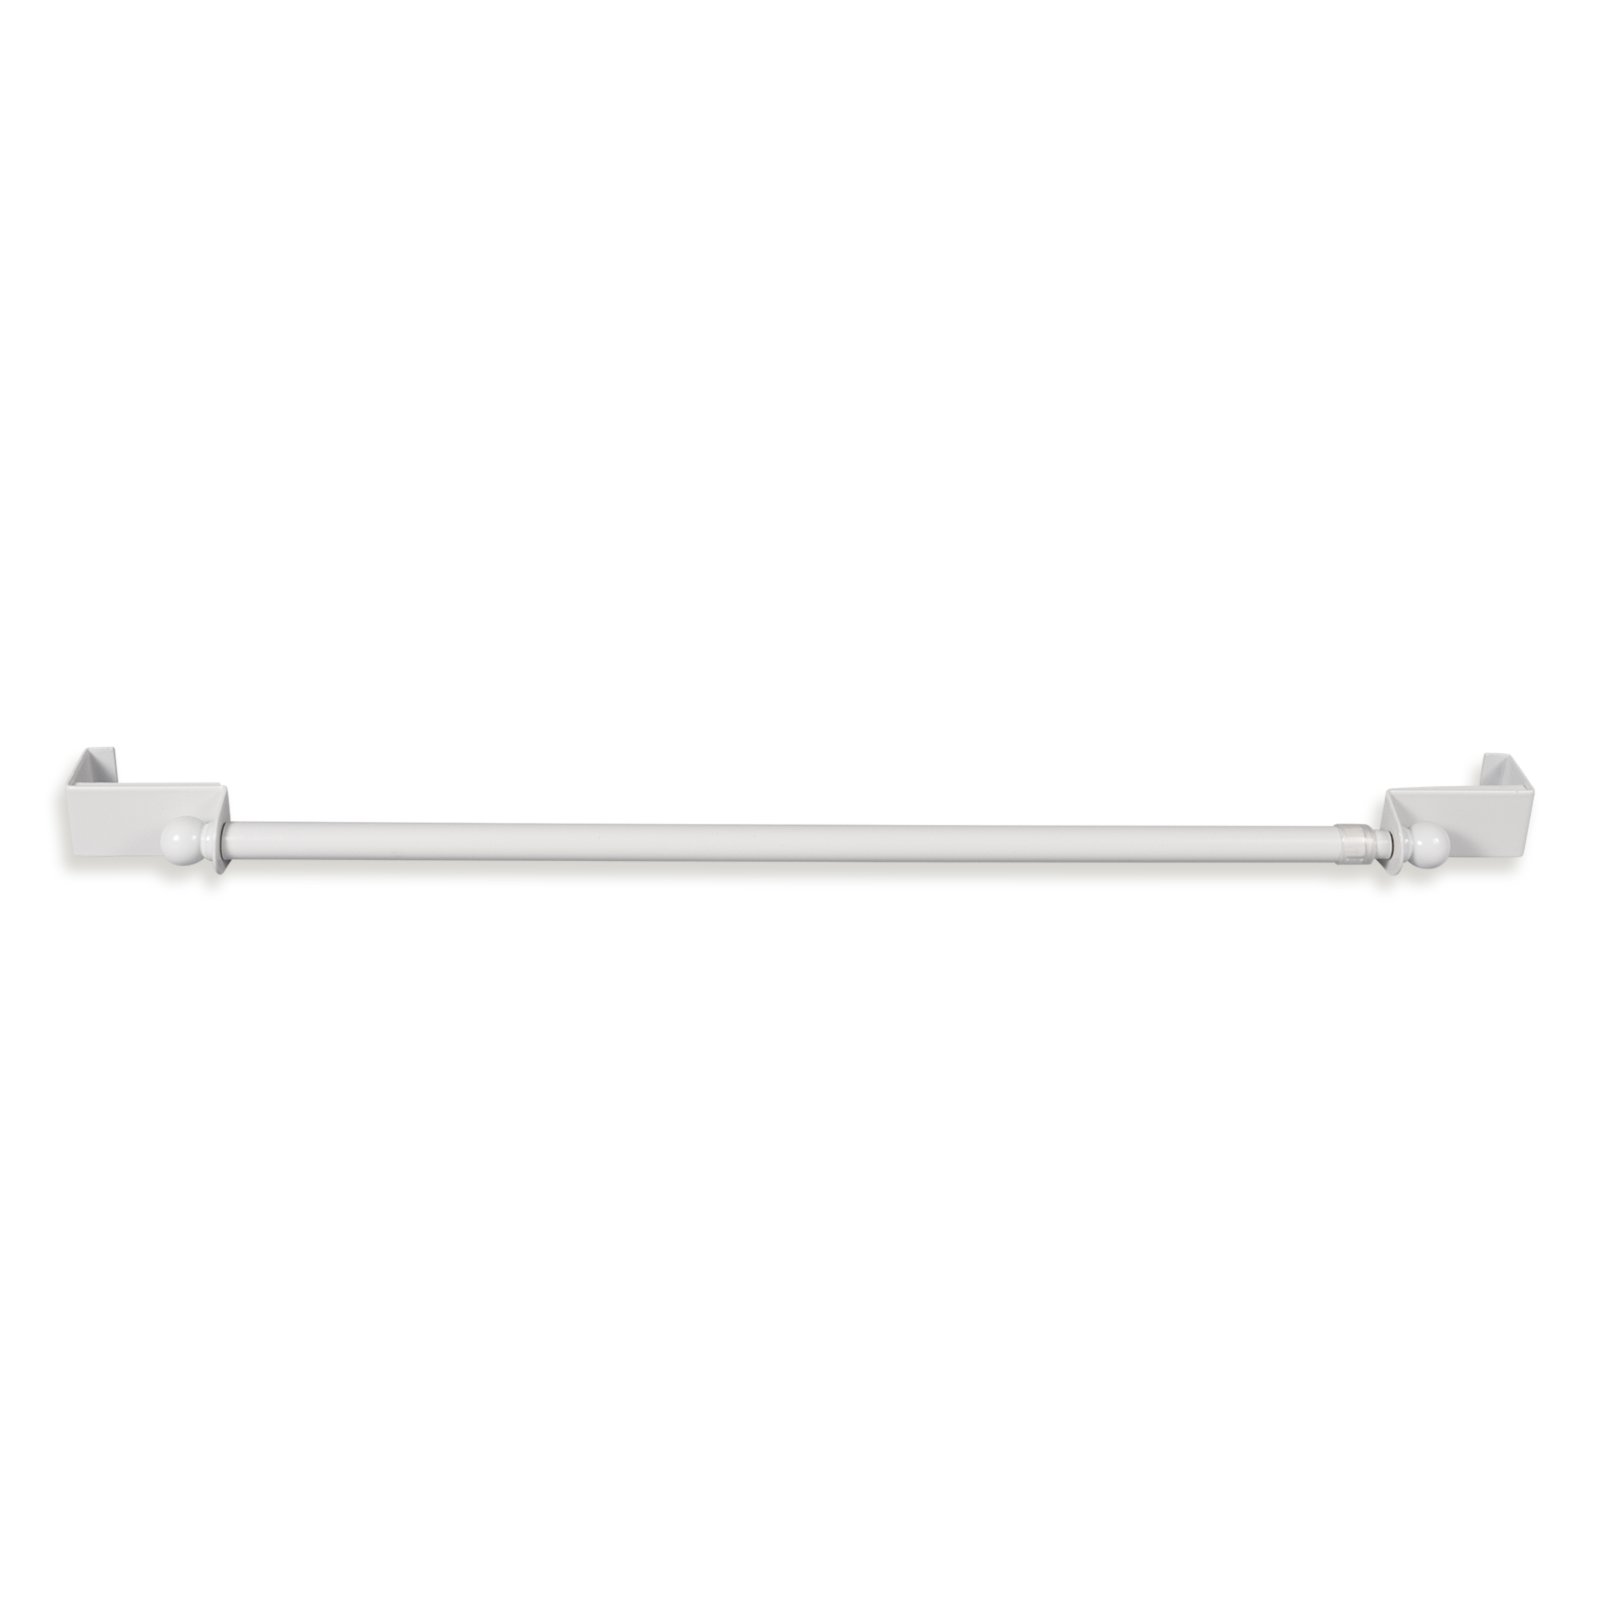 Spannfix-Gardinenstange - weiß - 90-130 cm | Online bei ROLLER kaufen